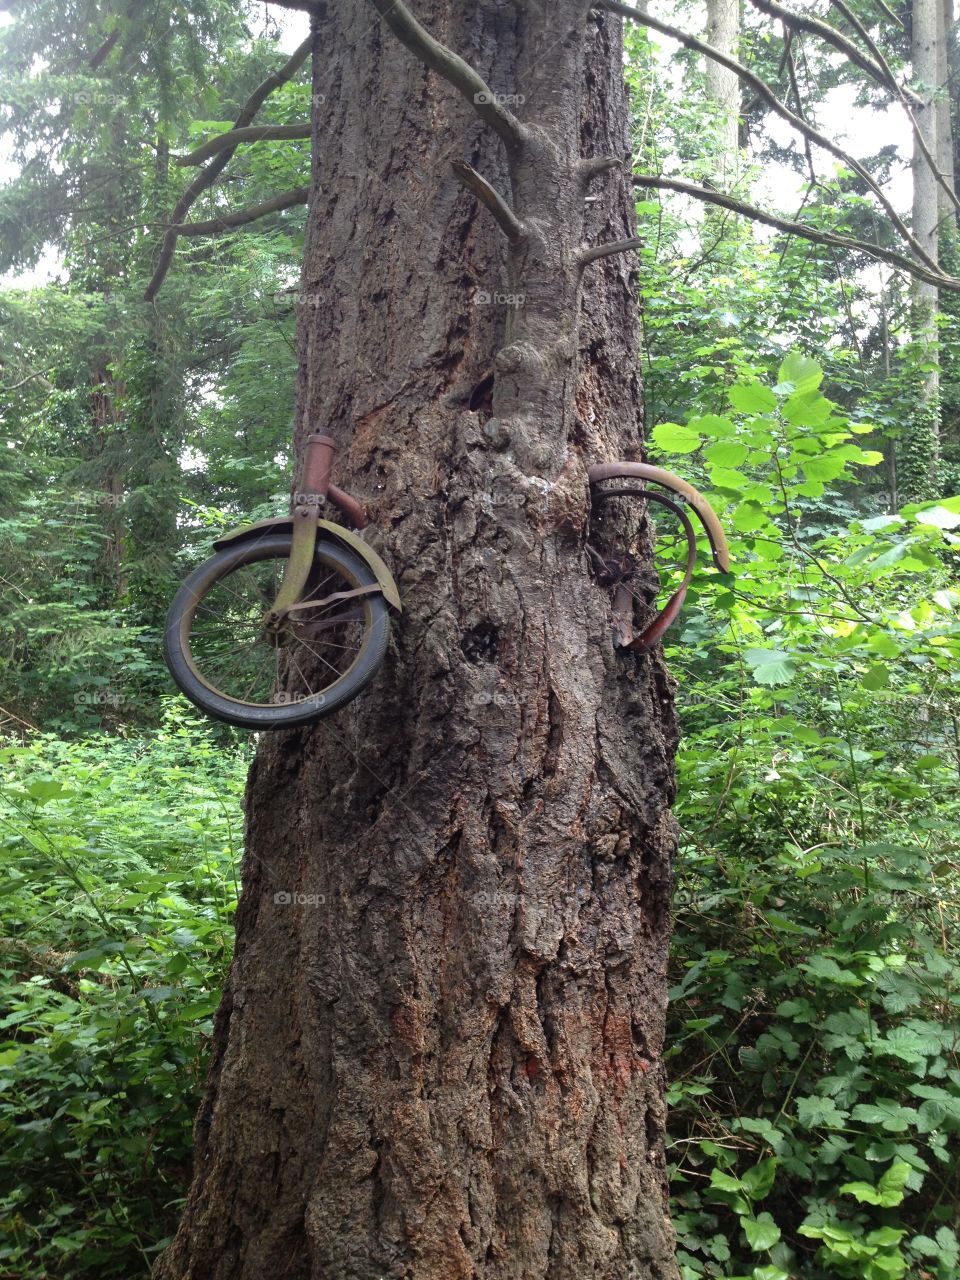 Bike in a tree
Vashon Island, WA